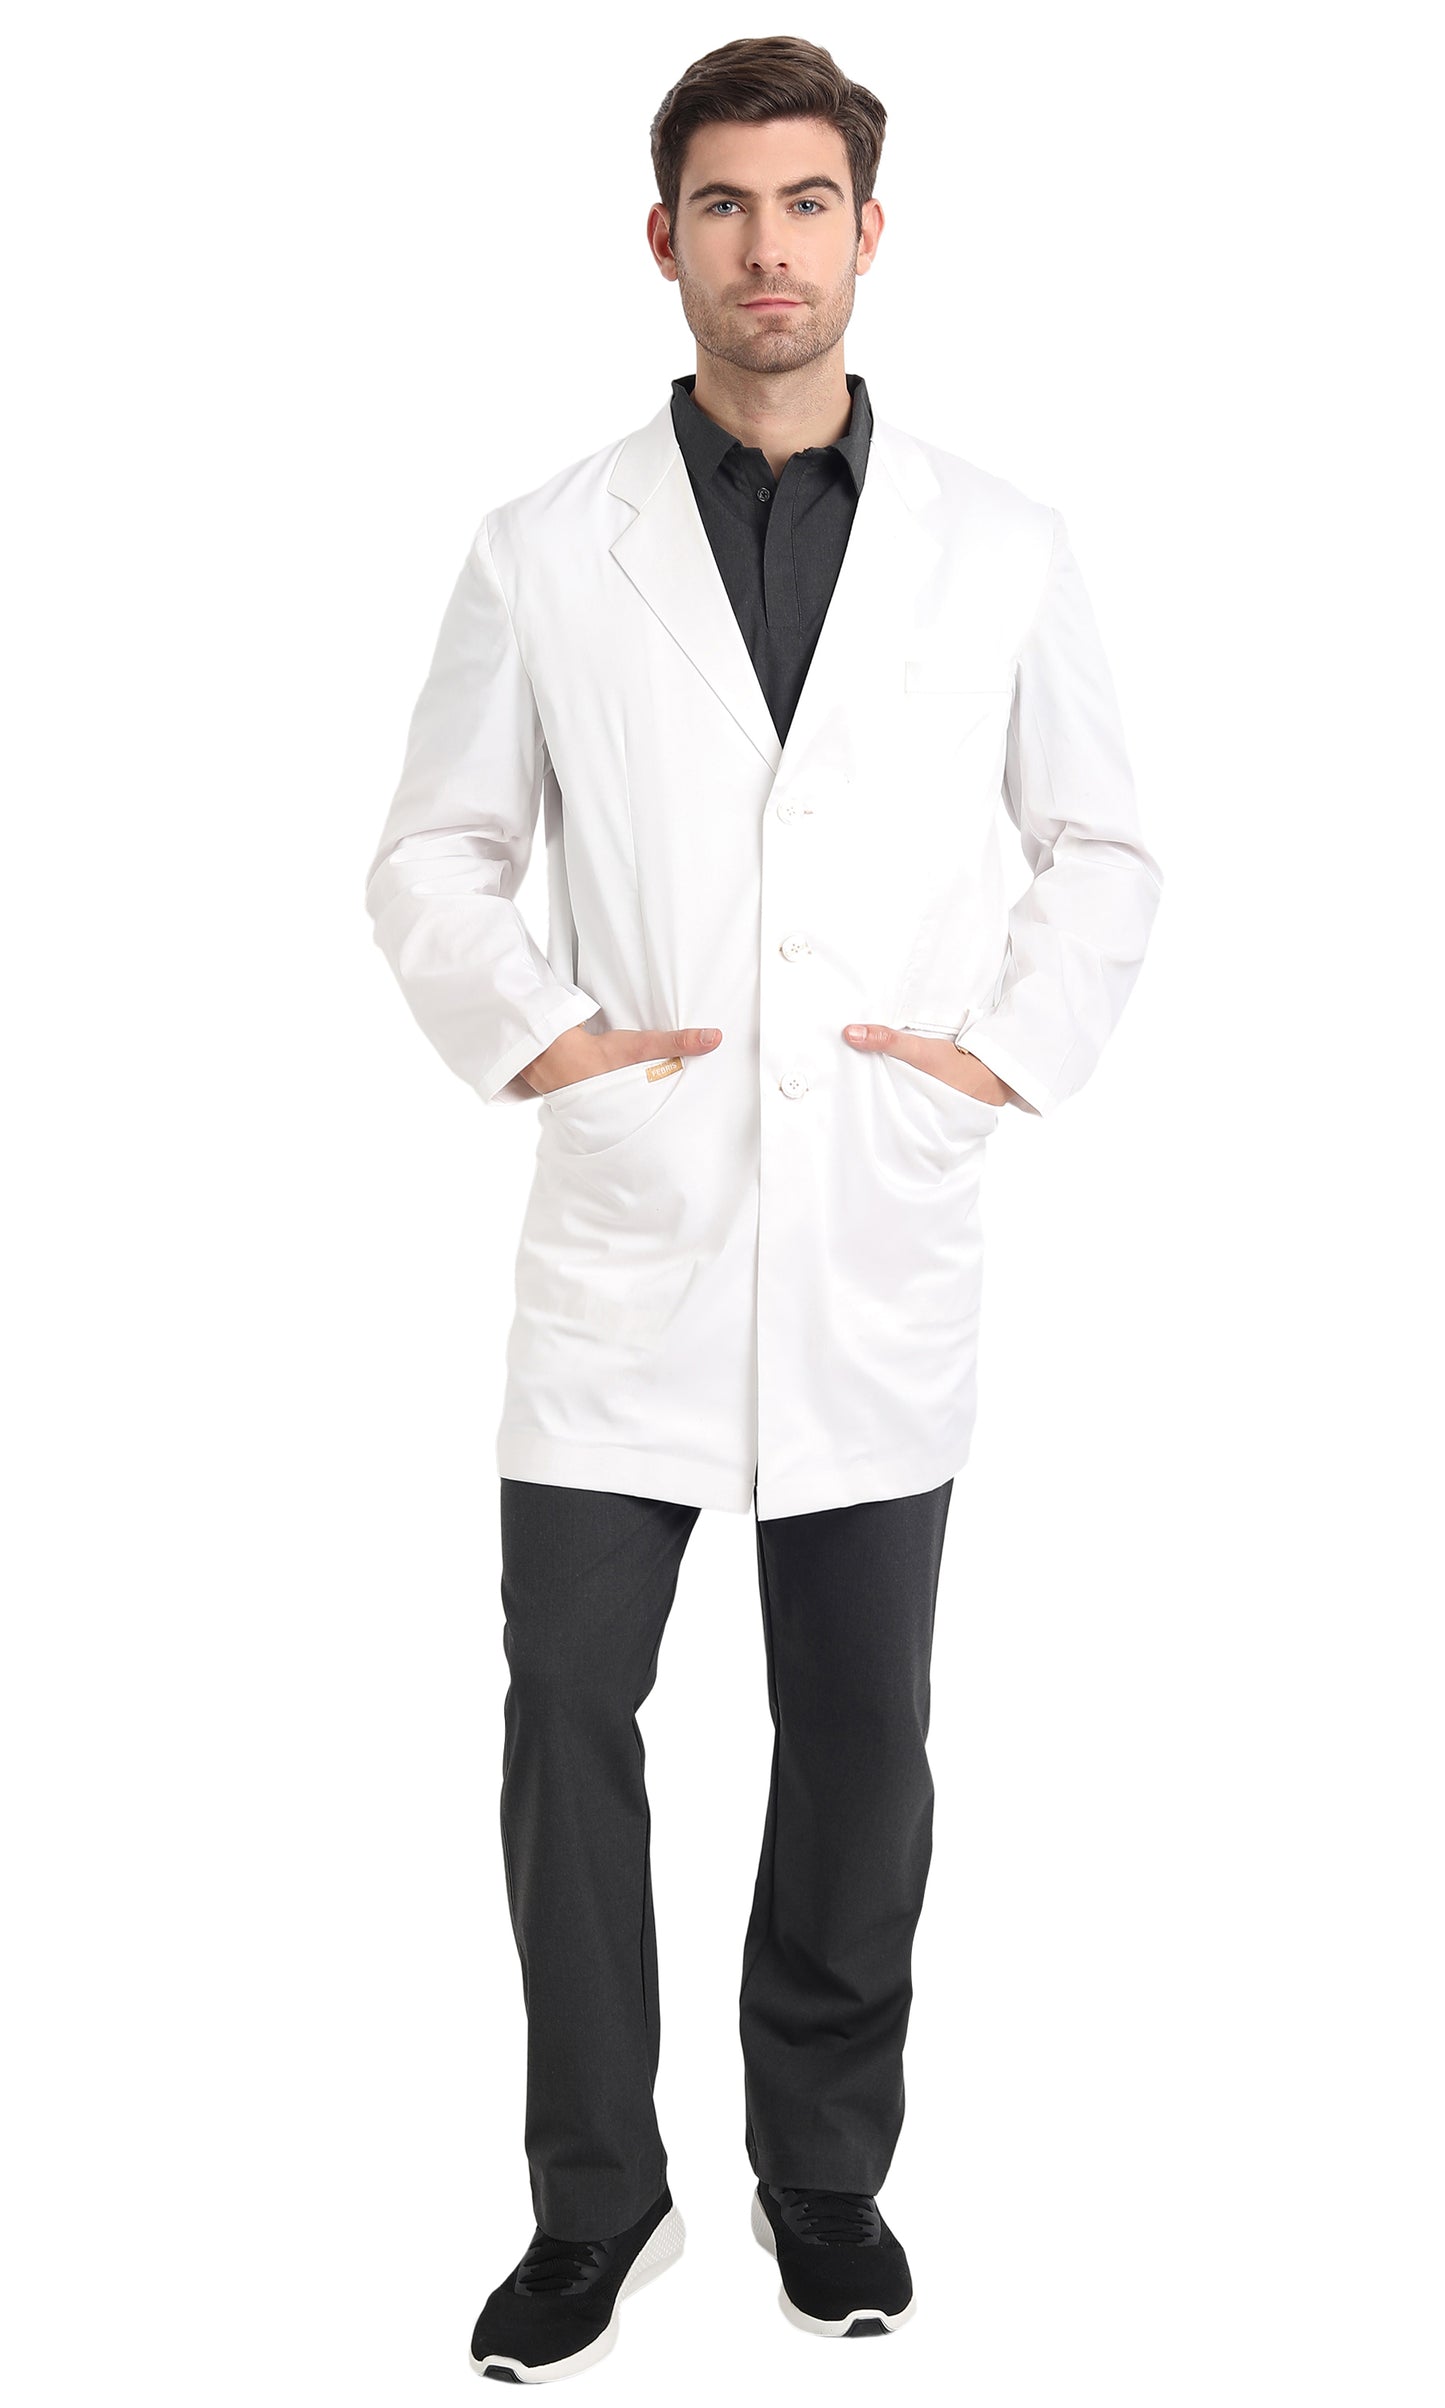 Men's Premium Lab Coat Apron